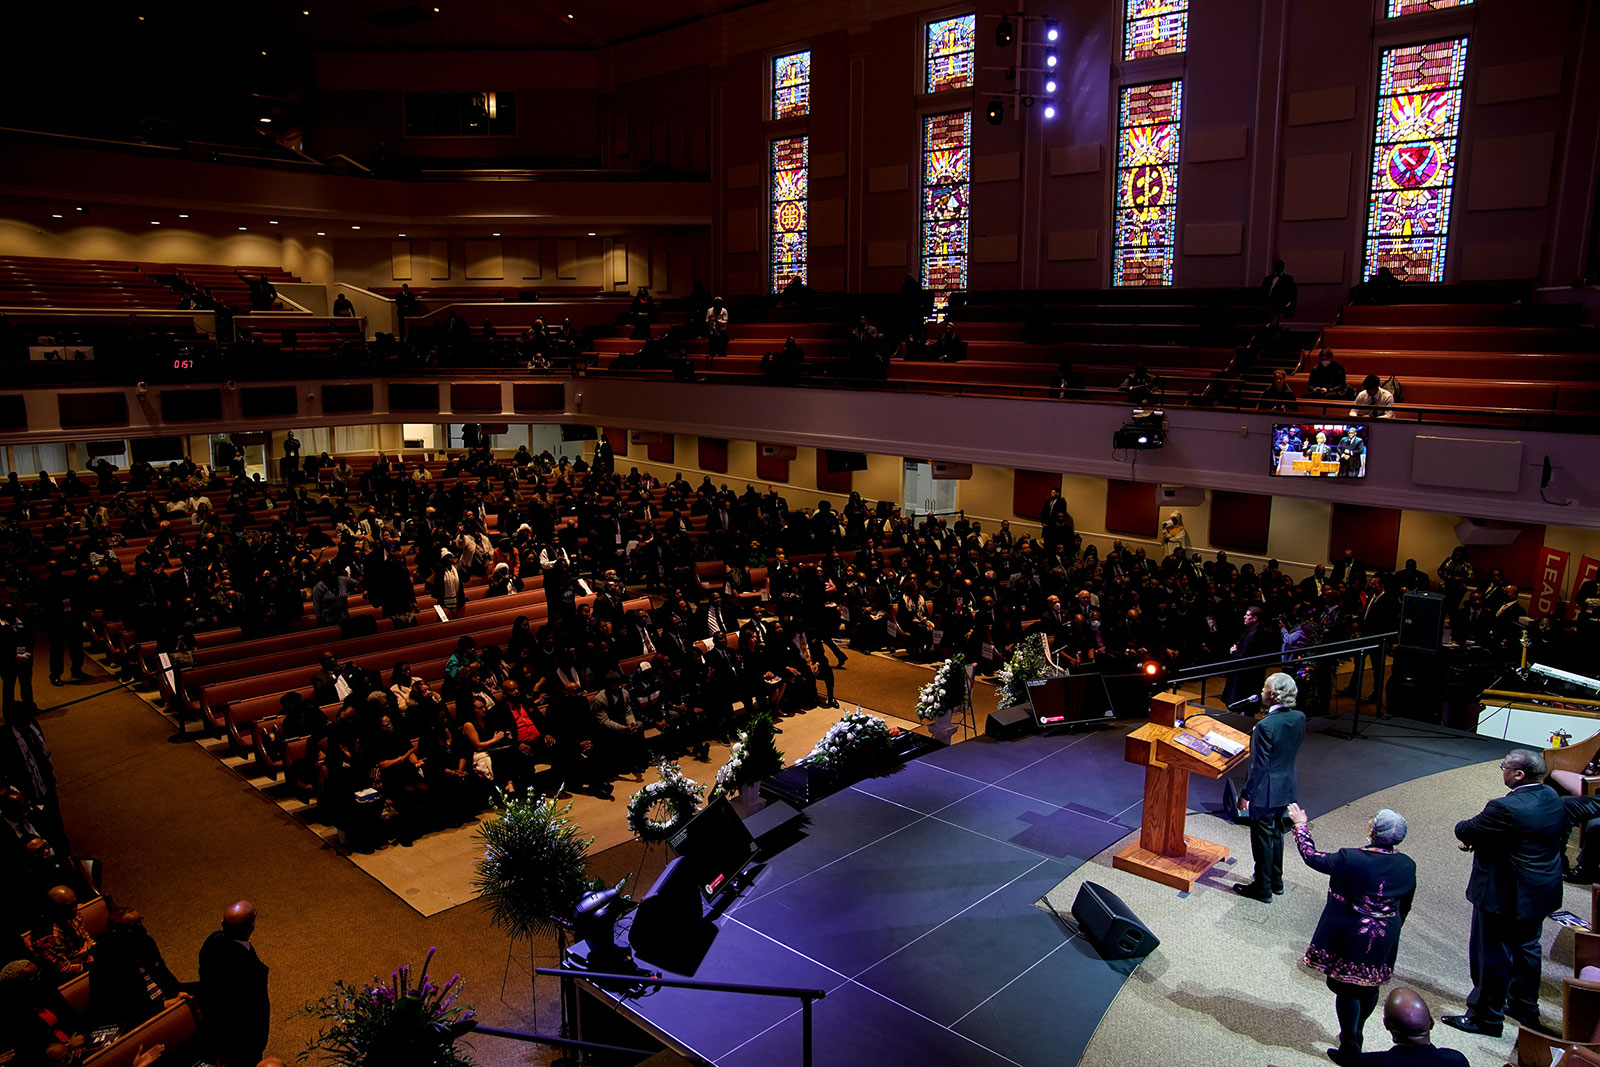 Rev. Al Sharpton delivers the eulogy.